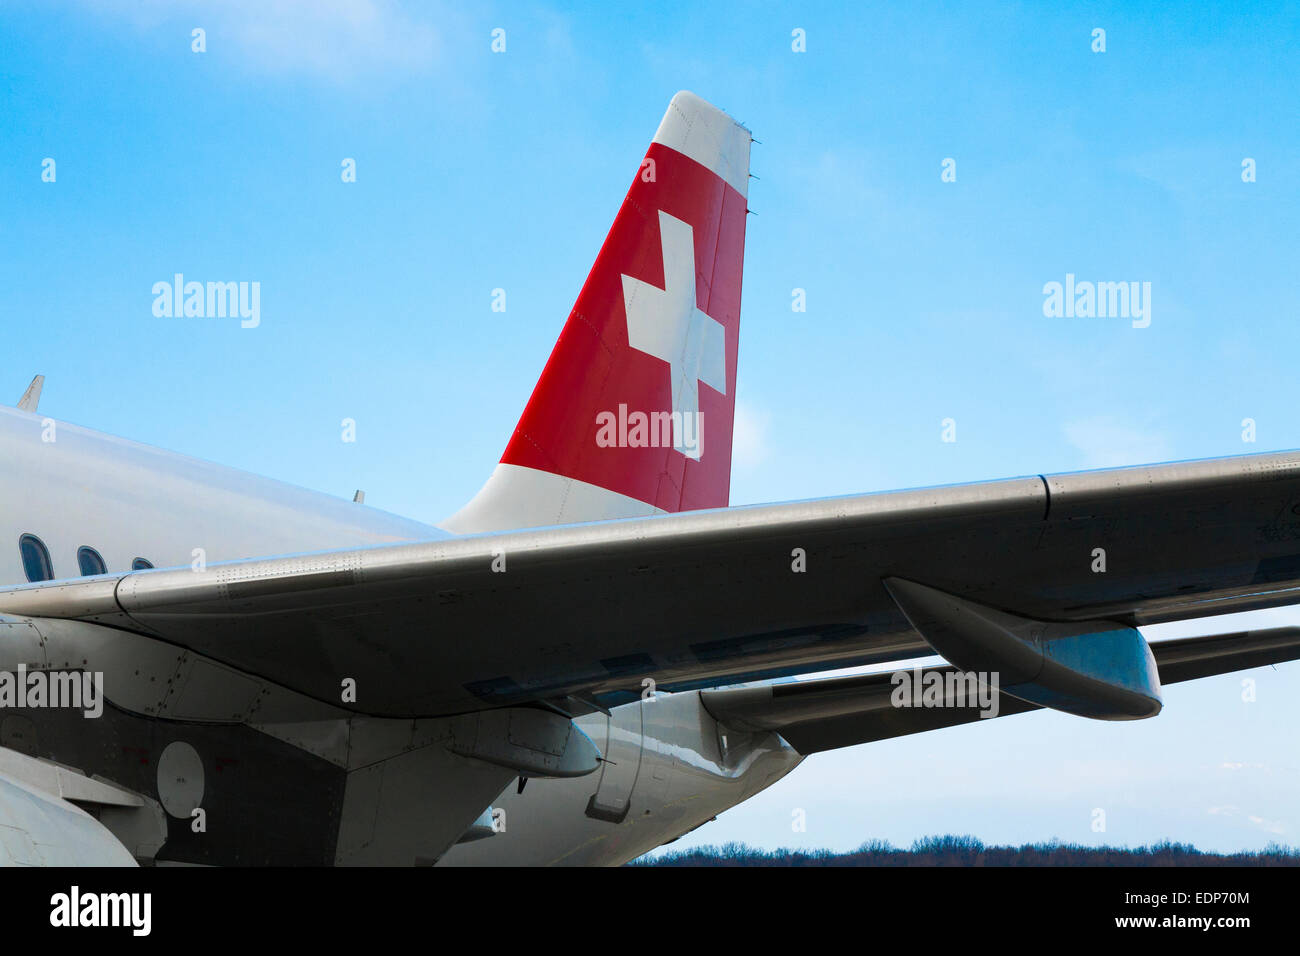 Tail Fin Leitwerk / tail Flugzeug mit weißen Kreuz auf rotem Grund der Swiss  International Airlines Airbus A319 Flugzeug Flugzeug Stockfotografie - Alamy